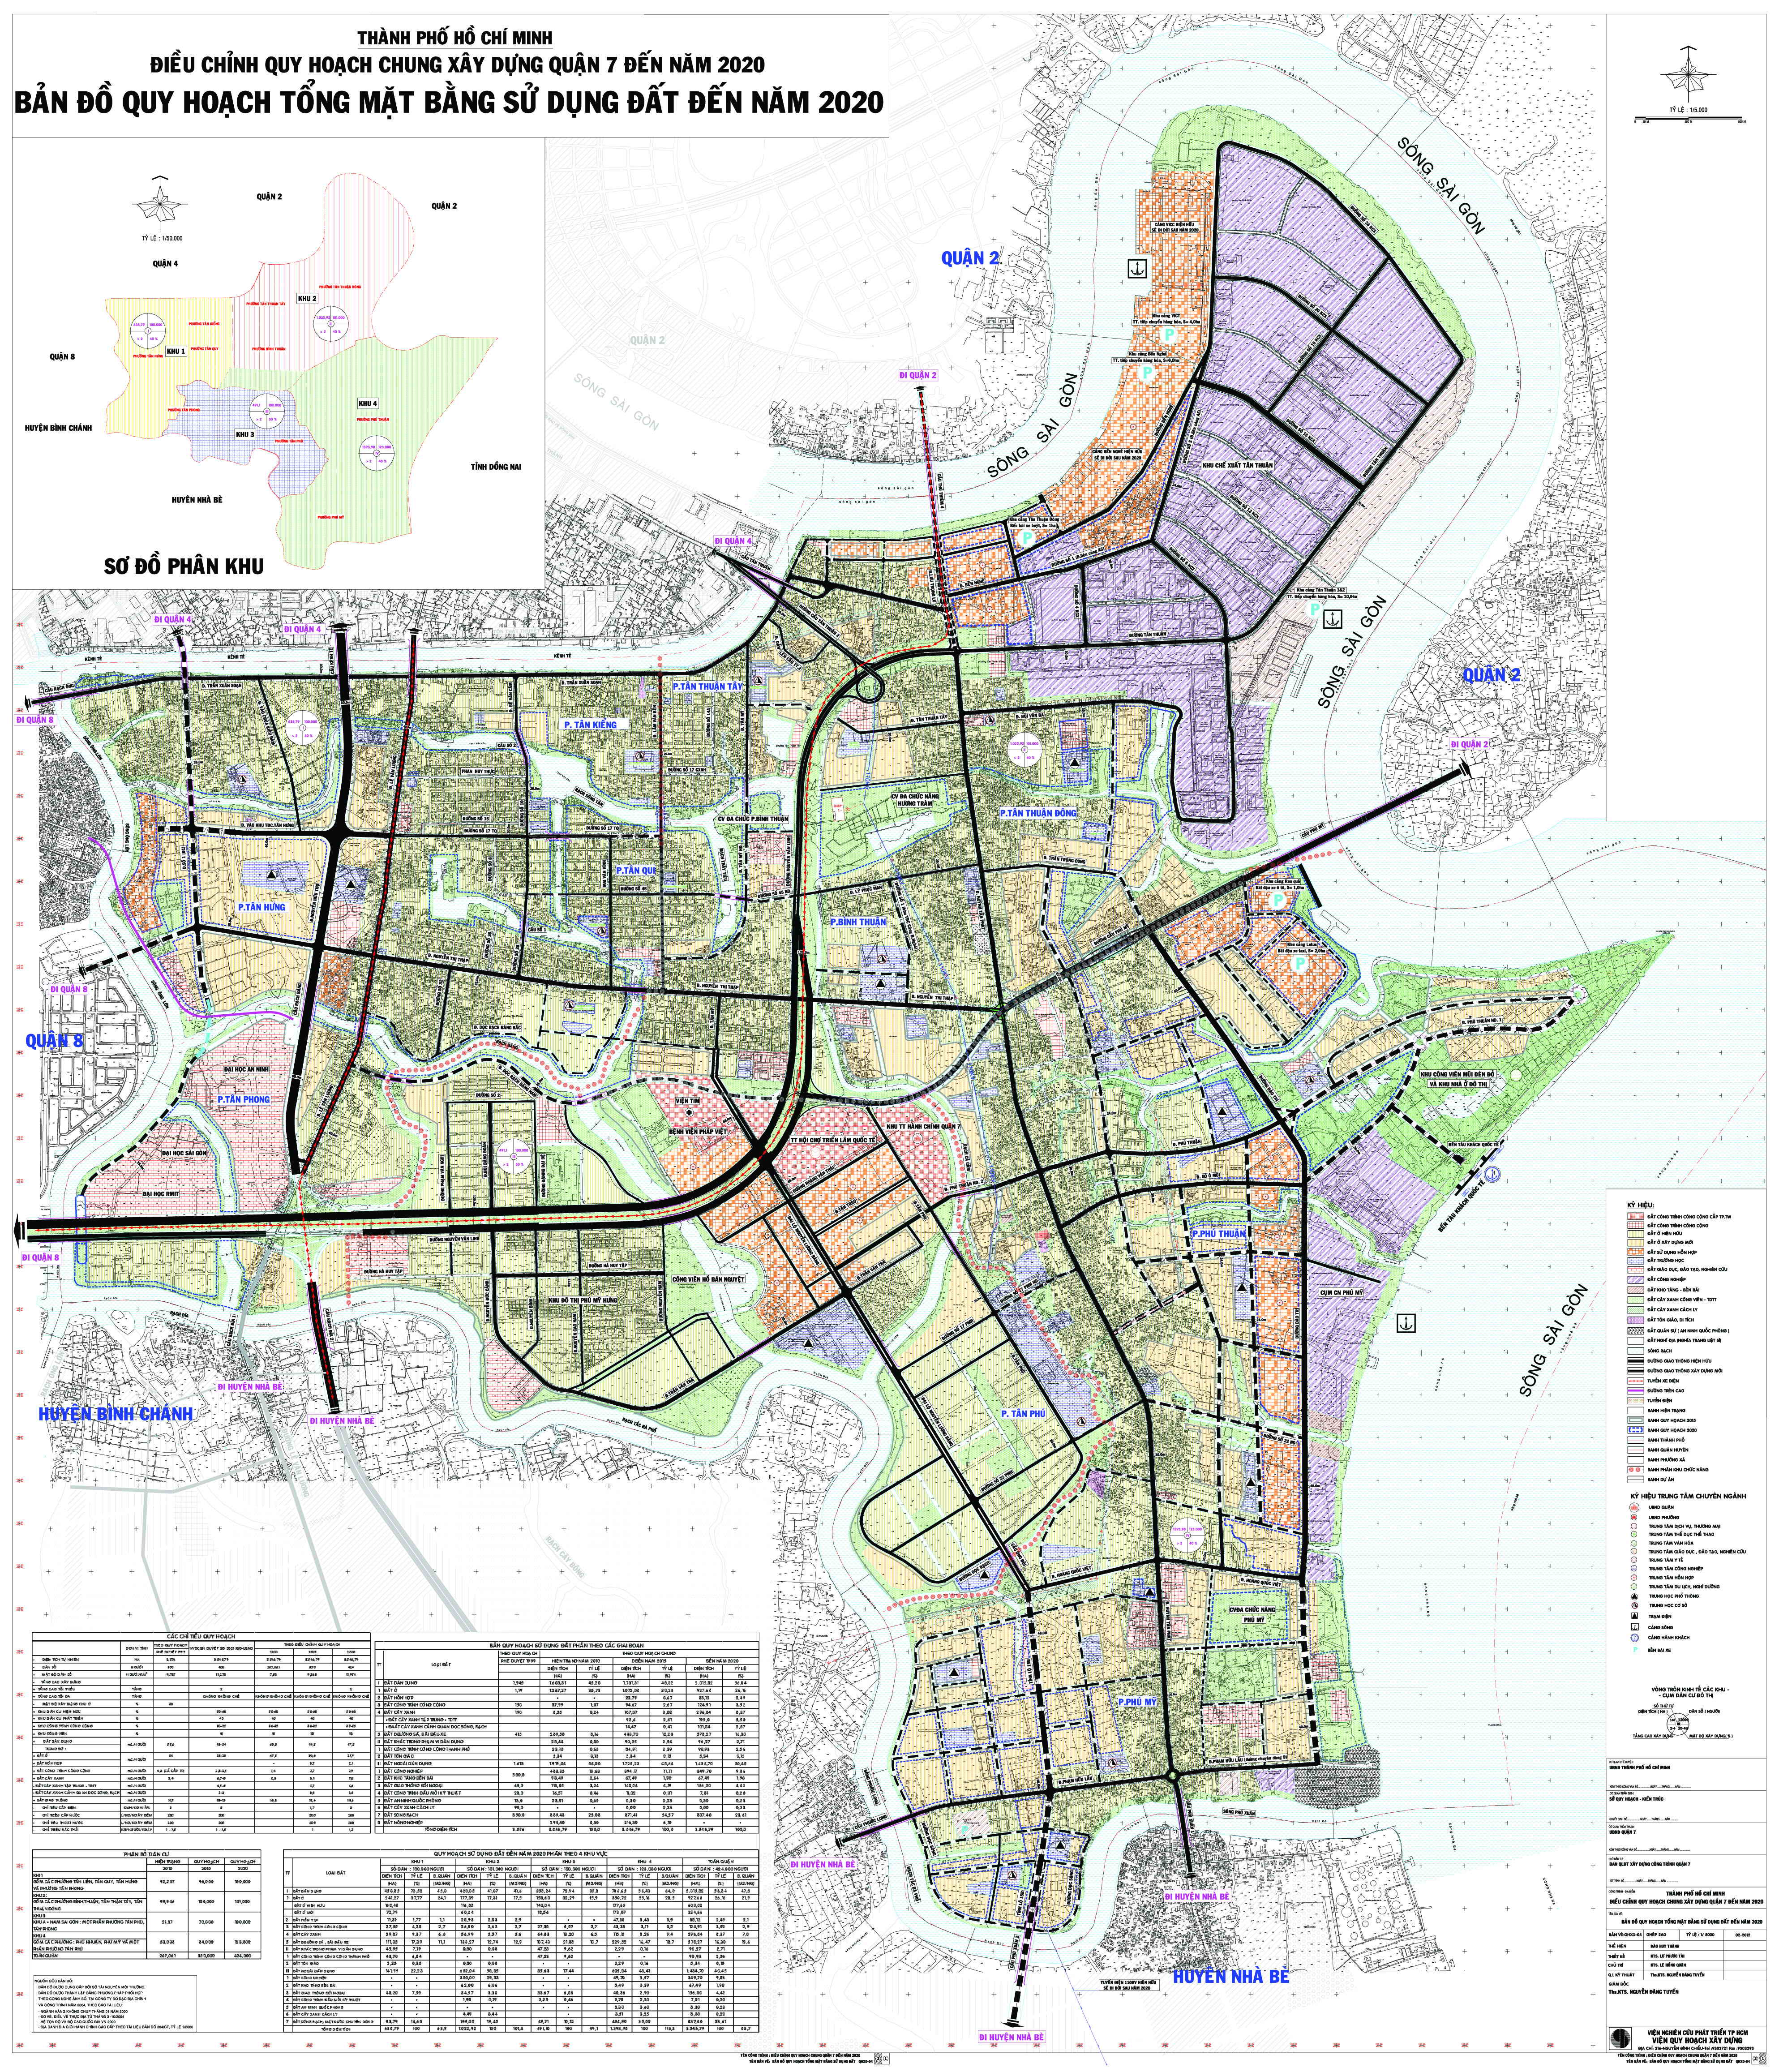 Bản đồ hành chính Quận 7 năm 2024 đã được cập nhật, với những thông tin mới nhất về các khu vực quy hoạch và cơ sở hạ tầng. Điều này sẽ giúp cho mọi người có thể cập nhật thông tin để có kế hoạch định hướng cho tương lai.